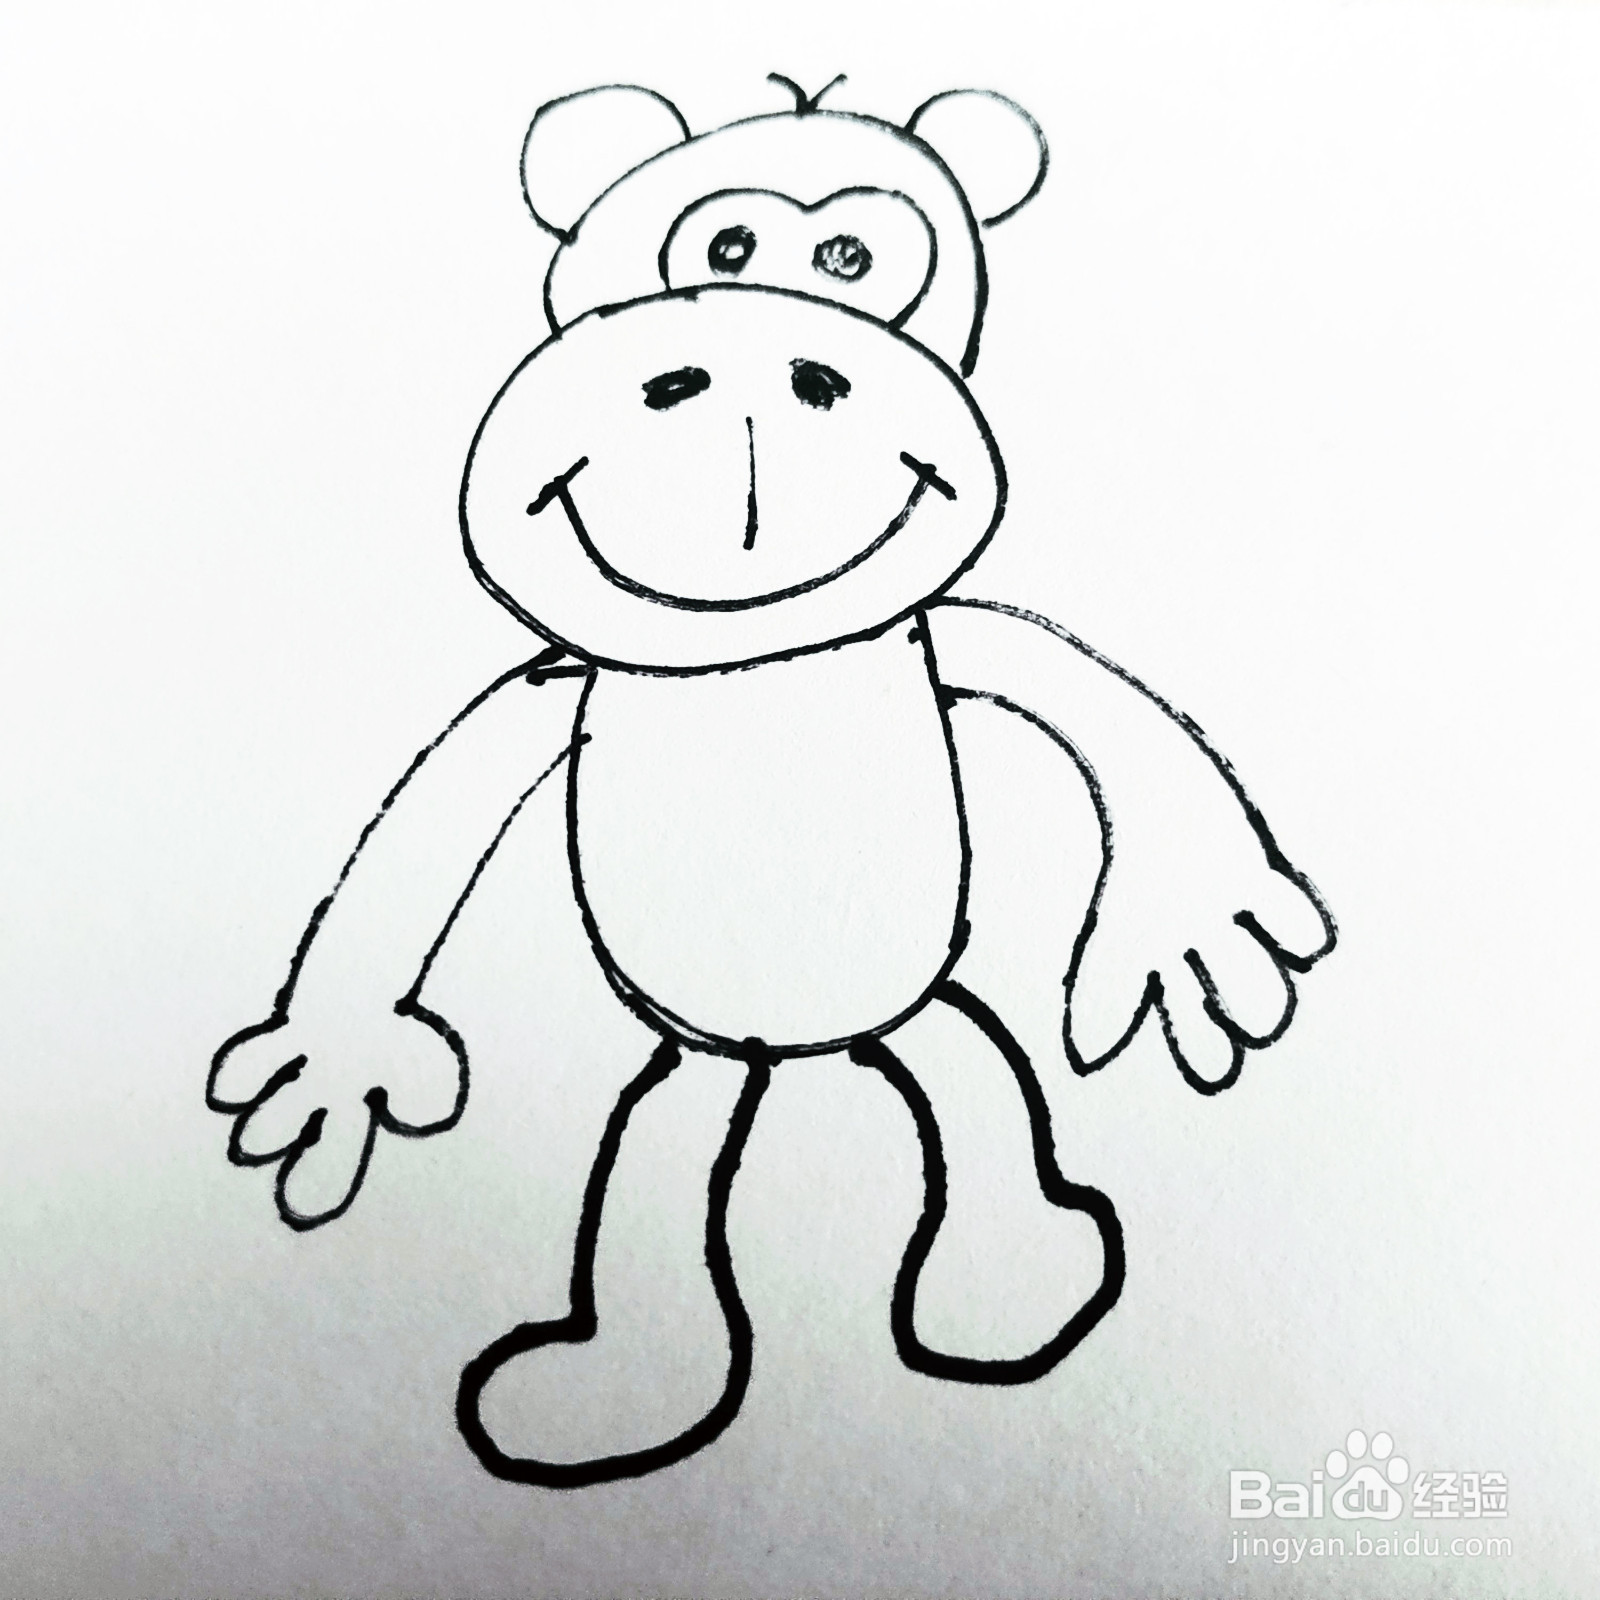 如何来画一只卡通大嘴猴子简笔画呢?